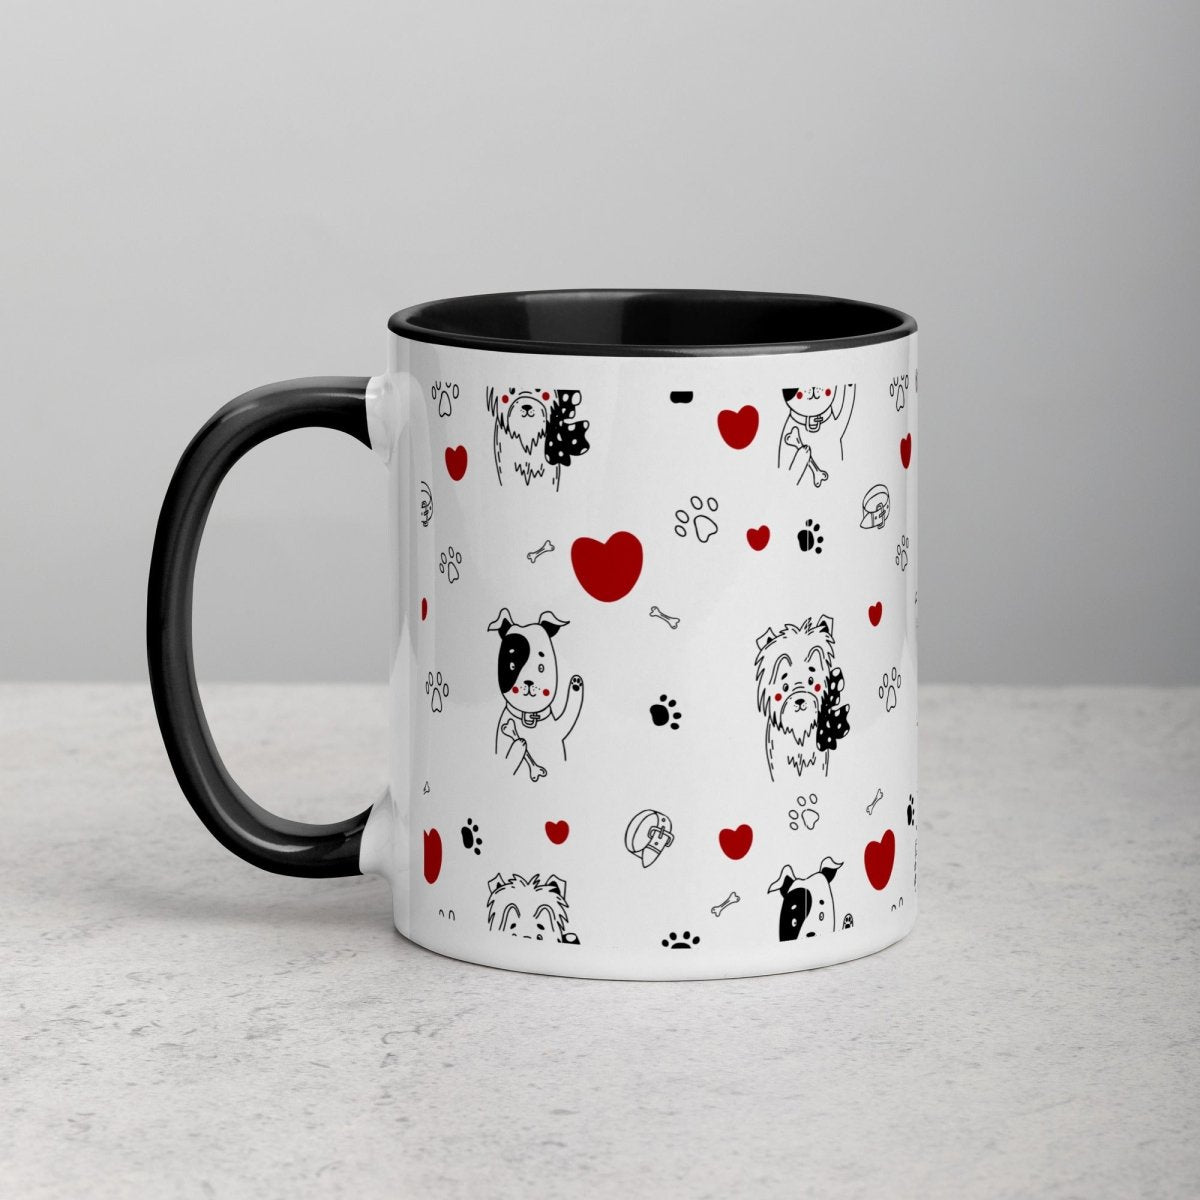 Dogs and Hearts Mug - DoggyLoveandMore